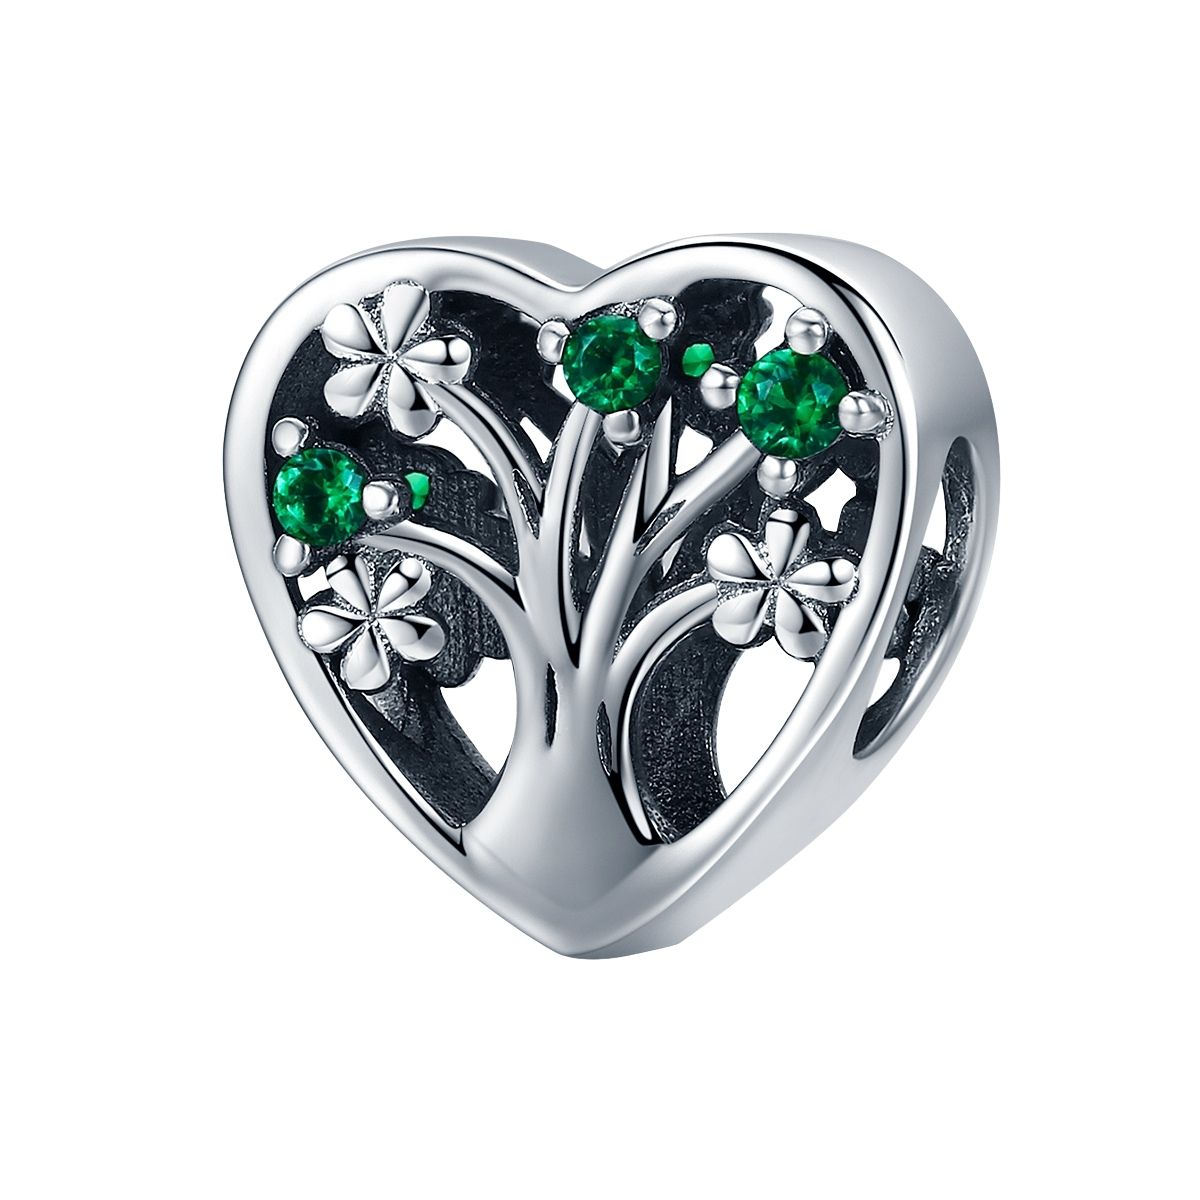 Levensboom hart bedel groen zirconia  tree of life bead  Zilverana  geschikt voor Biagi , Pandora , Trollbeads armband  925 zilver